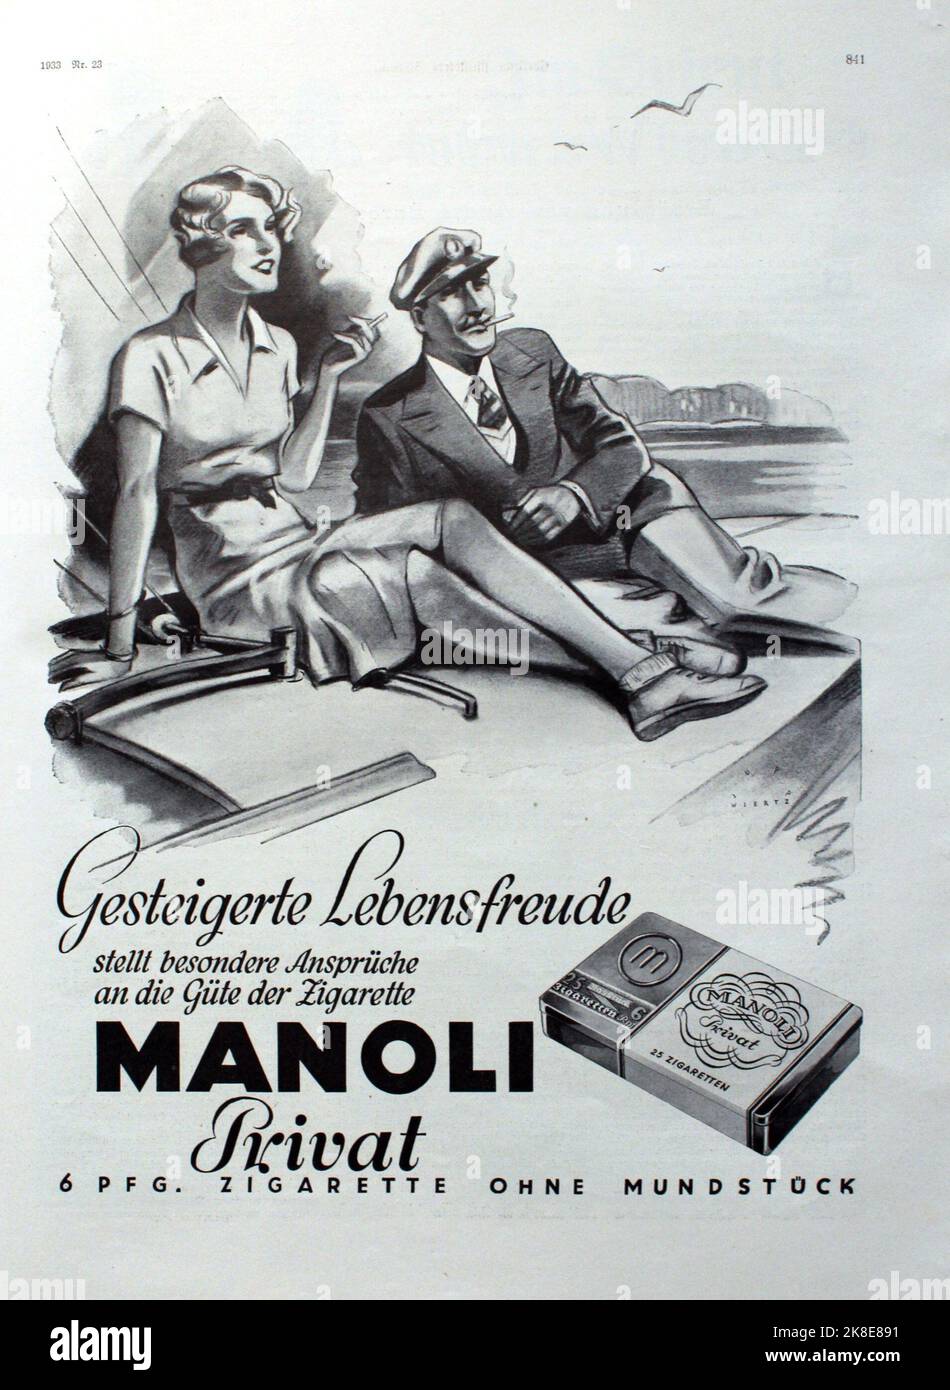 Anzeige der Manoli Zigarettenfabrik Berlin aus dem Jahr 1933 für Zigaretten der Marke 'Manoli privat', die „Meisterzigarette ohne Mundstück“, gestaltet von Jupp Wiertz (1888-1939). Advert of Manoli cigarette factory, Berlin from 1933 for their brand 'Manoli privat', designed by Jupp Wiertz (1888-1939) Stock Photo